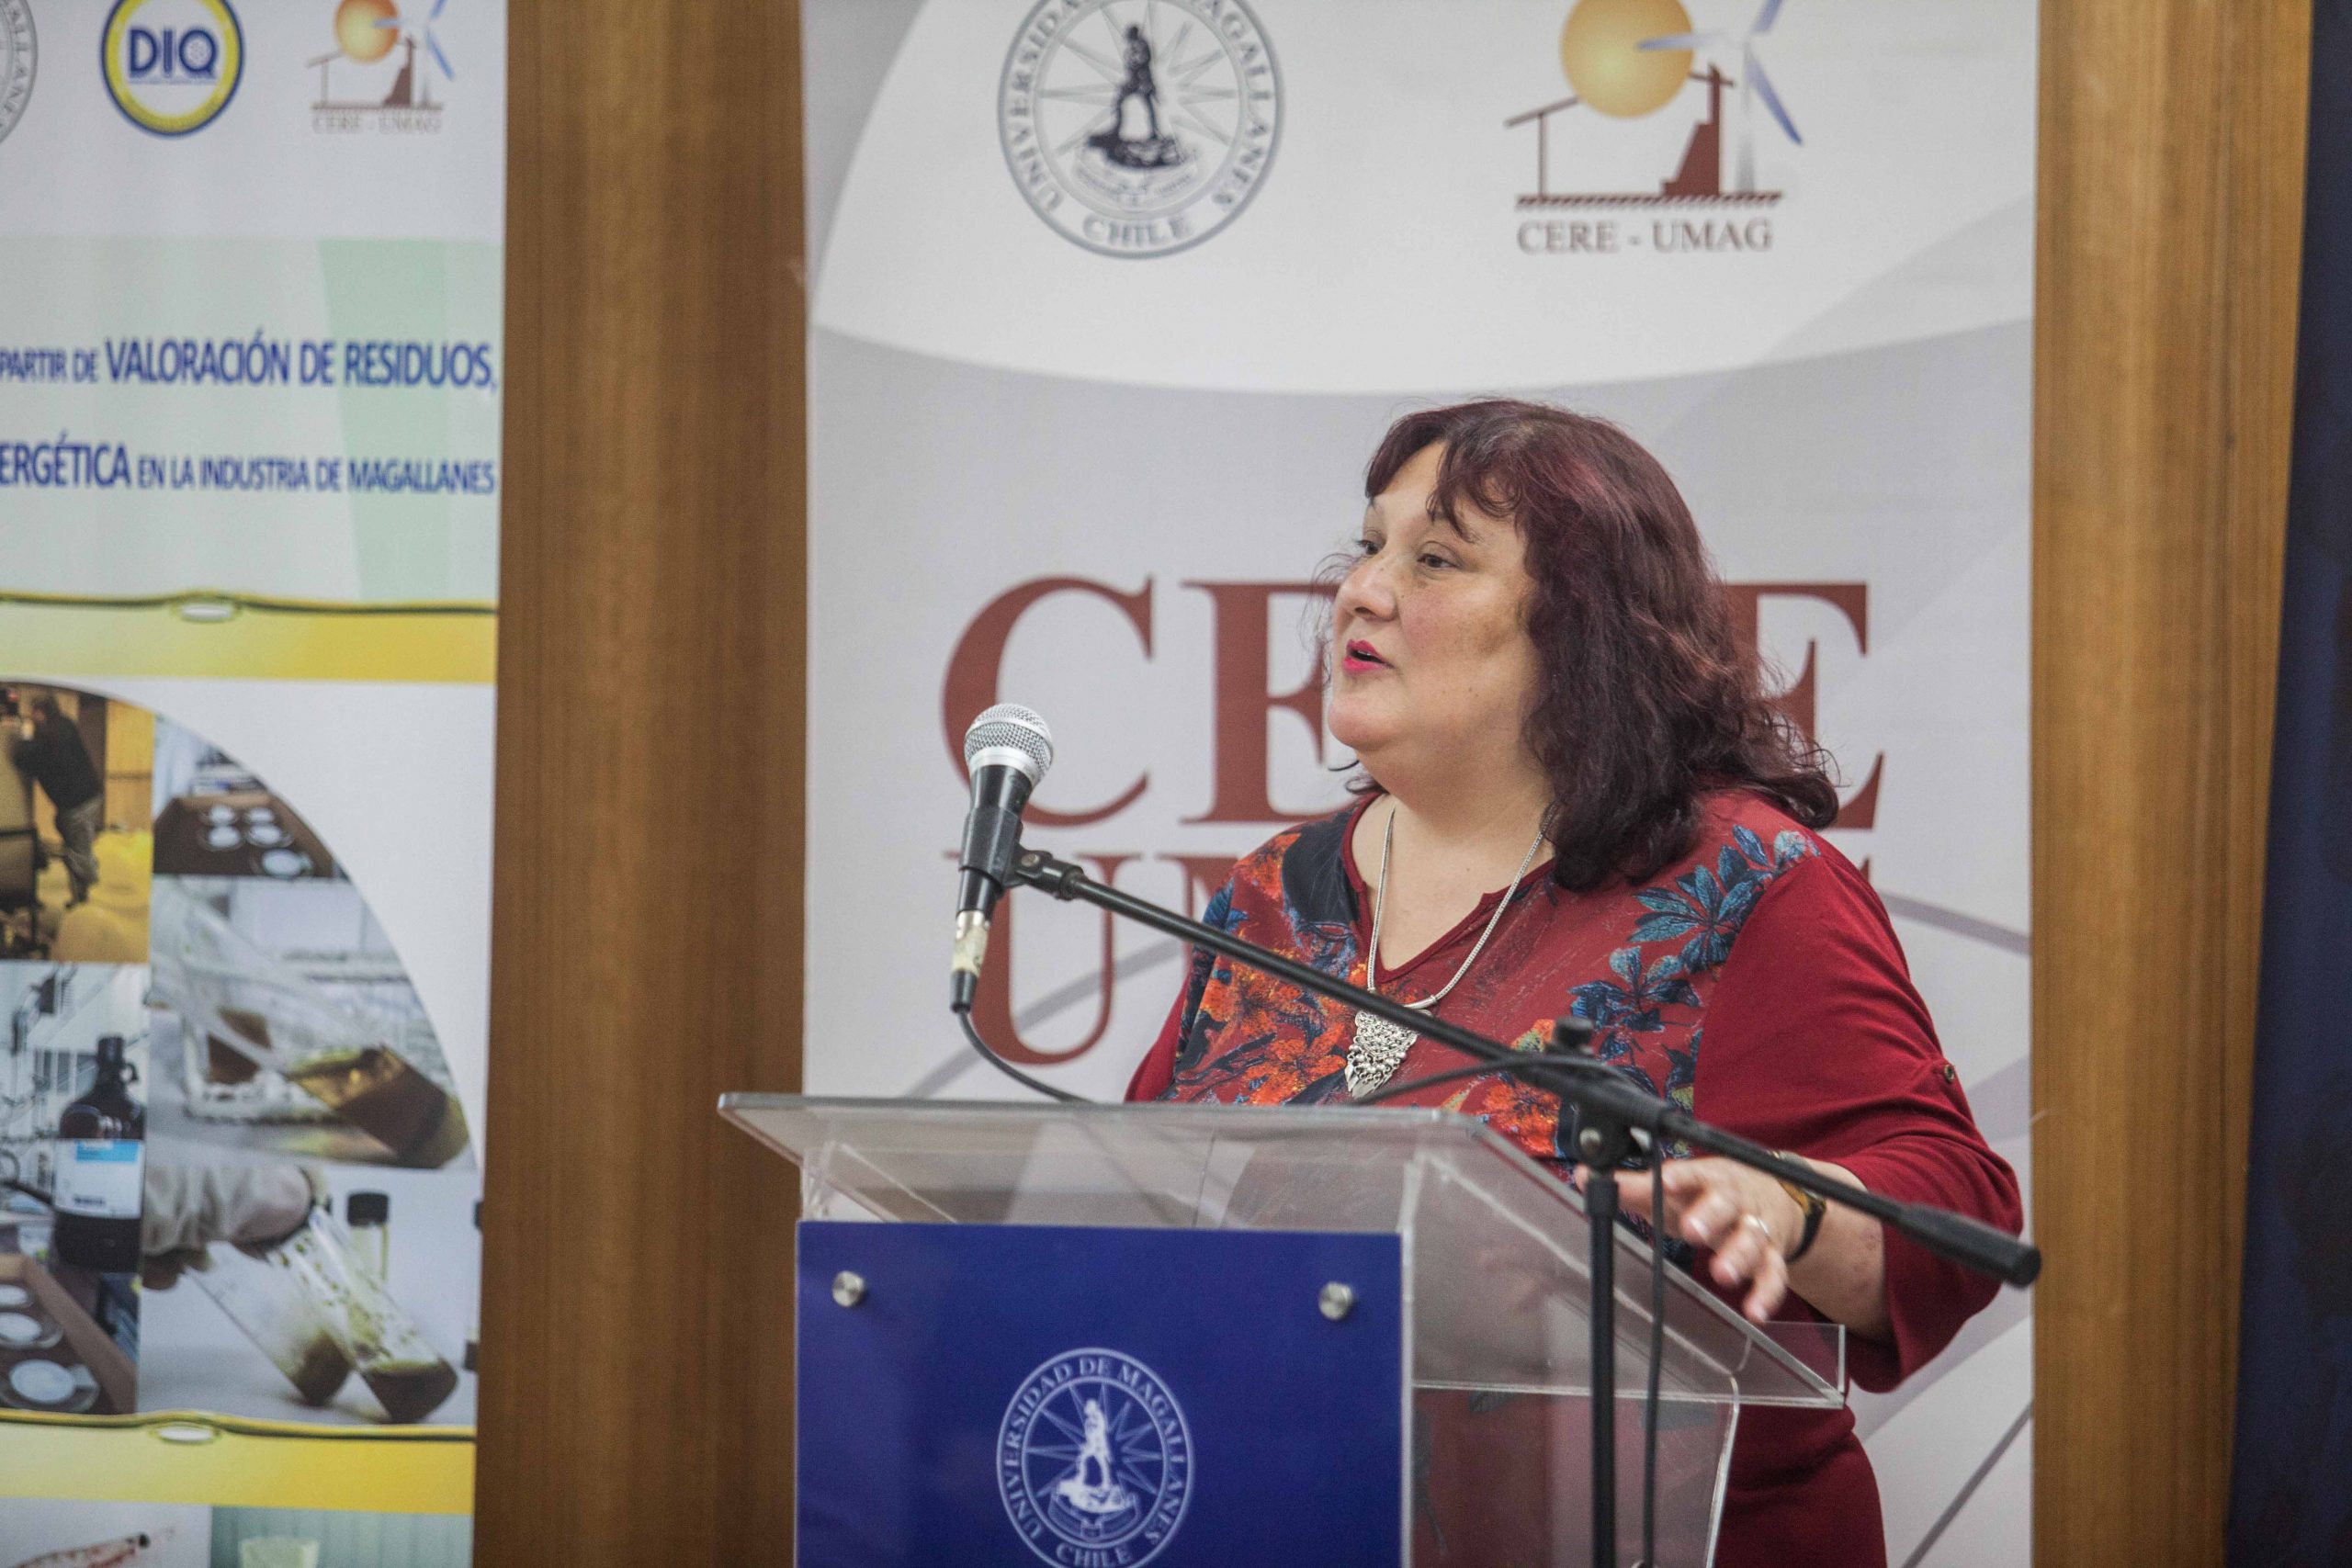 Investigadora del CERE UMAG expuso en Congreso Internacional de Bioenergía